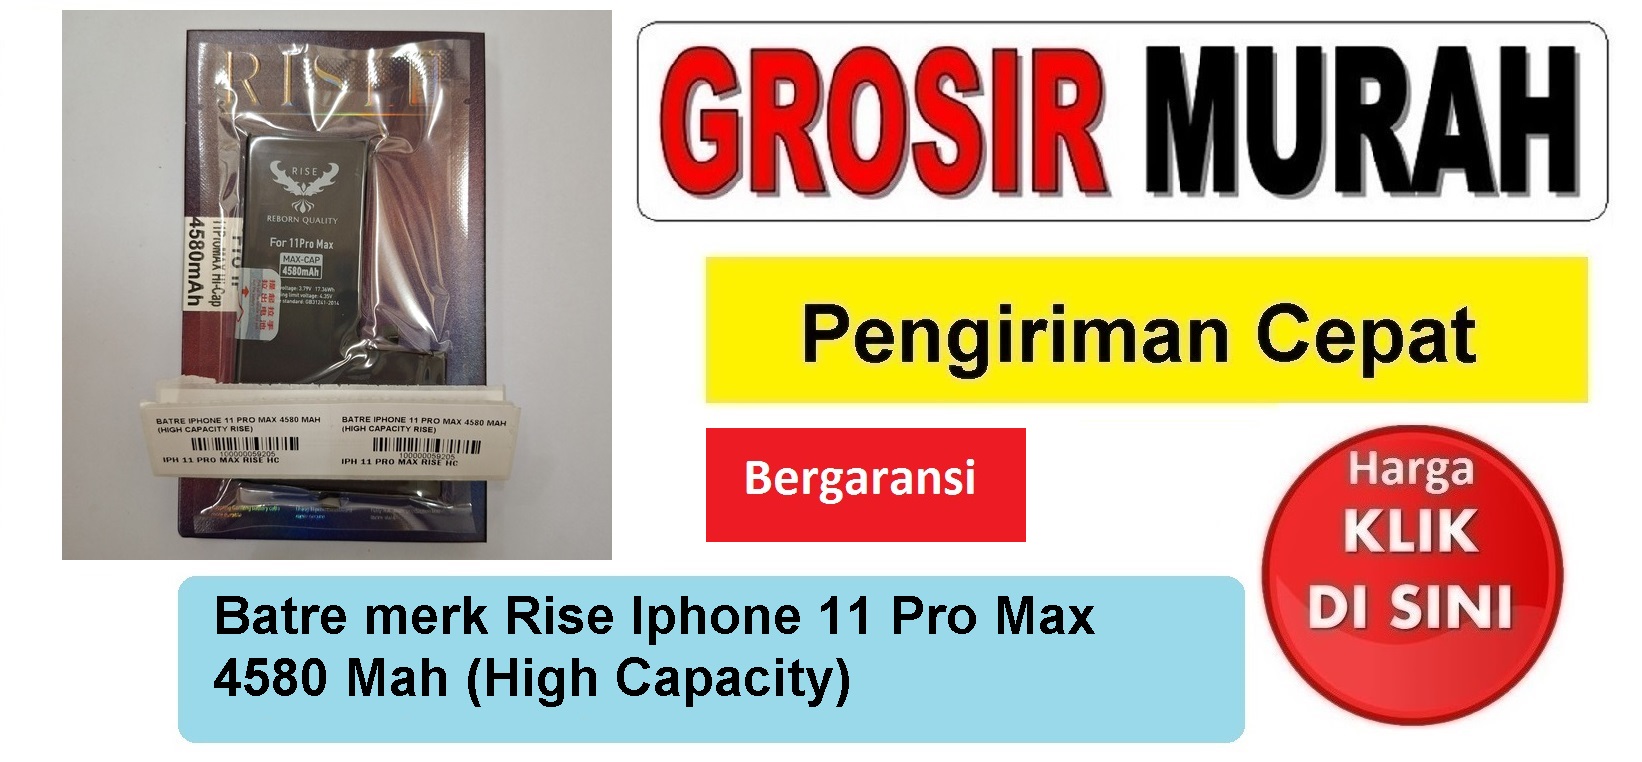 Batre merk Rise Iphone 11 Pro Max 4580 Mah (High Capacity) Baterai Battery Bergaransi Batere